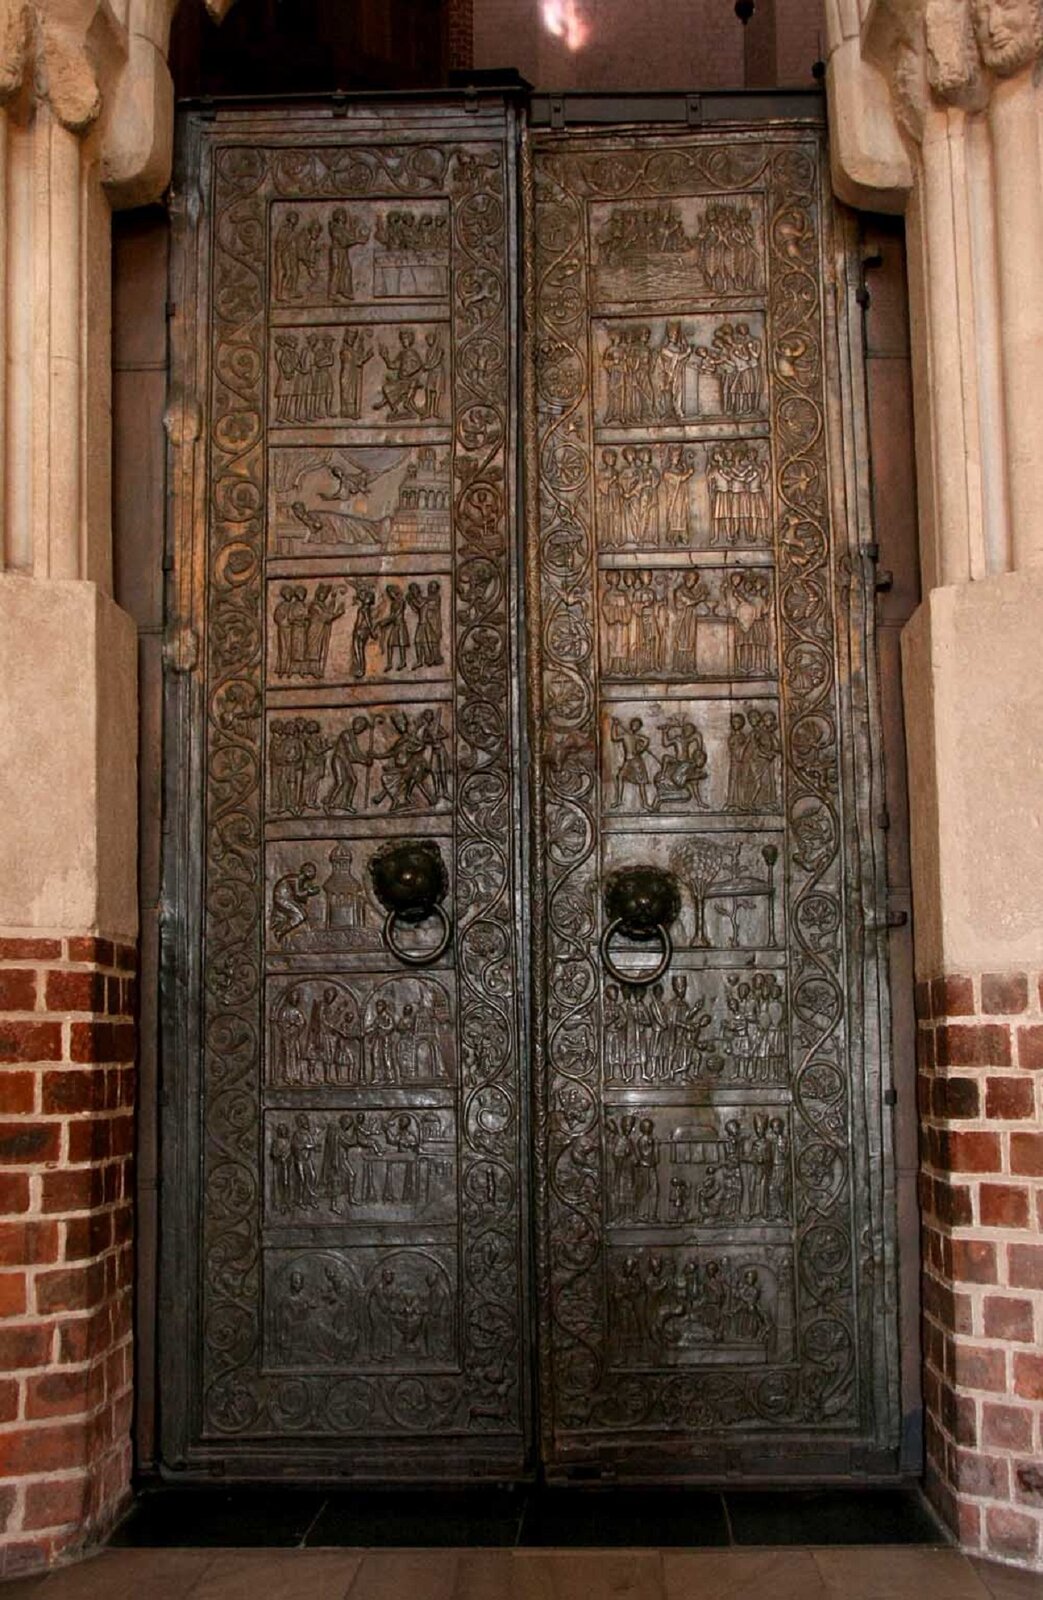 Zdjęcie przedstawia stare drzwi wykonane z brązu. Na drzwiach widnieje wytłoczona historyjka obrazkowa z udziałem świętych.